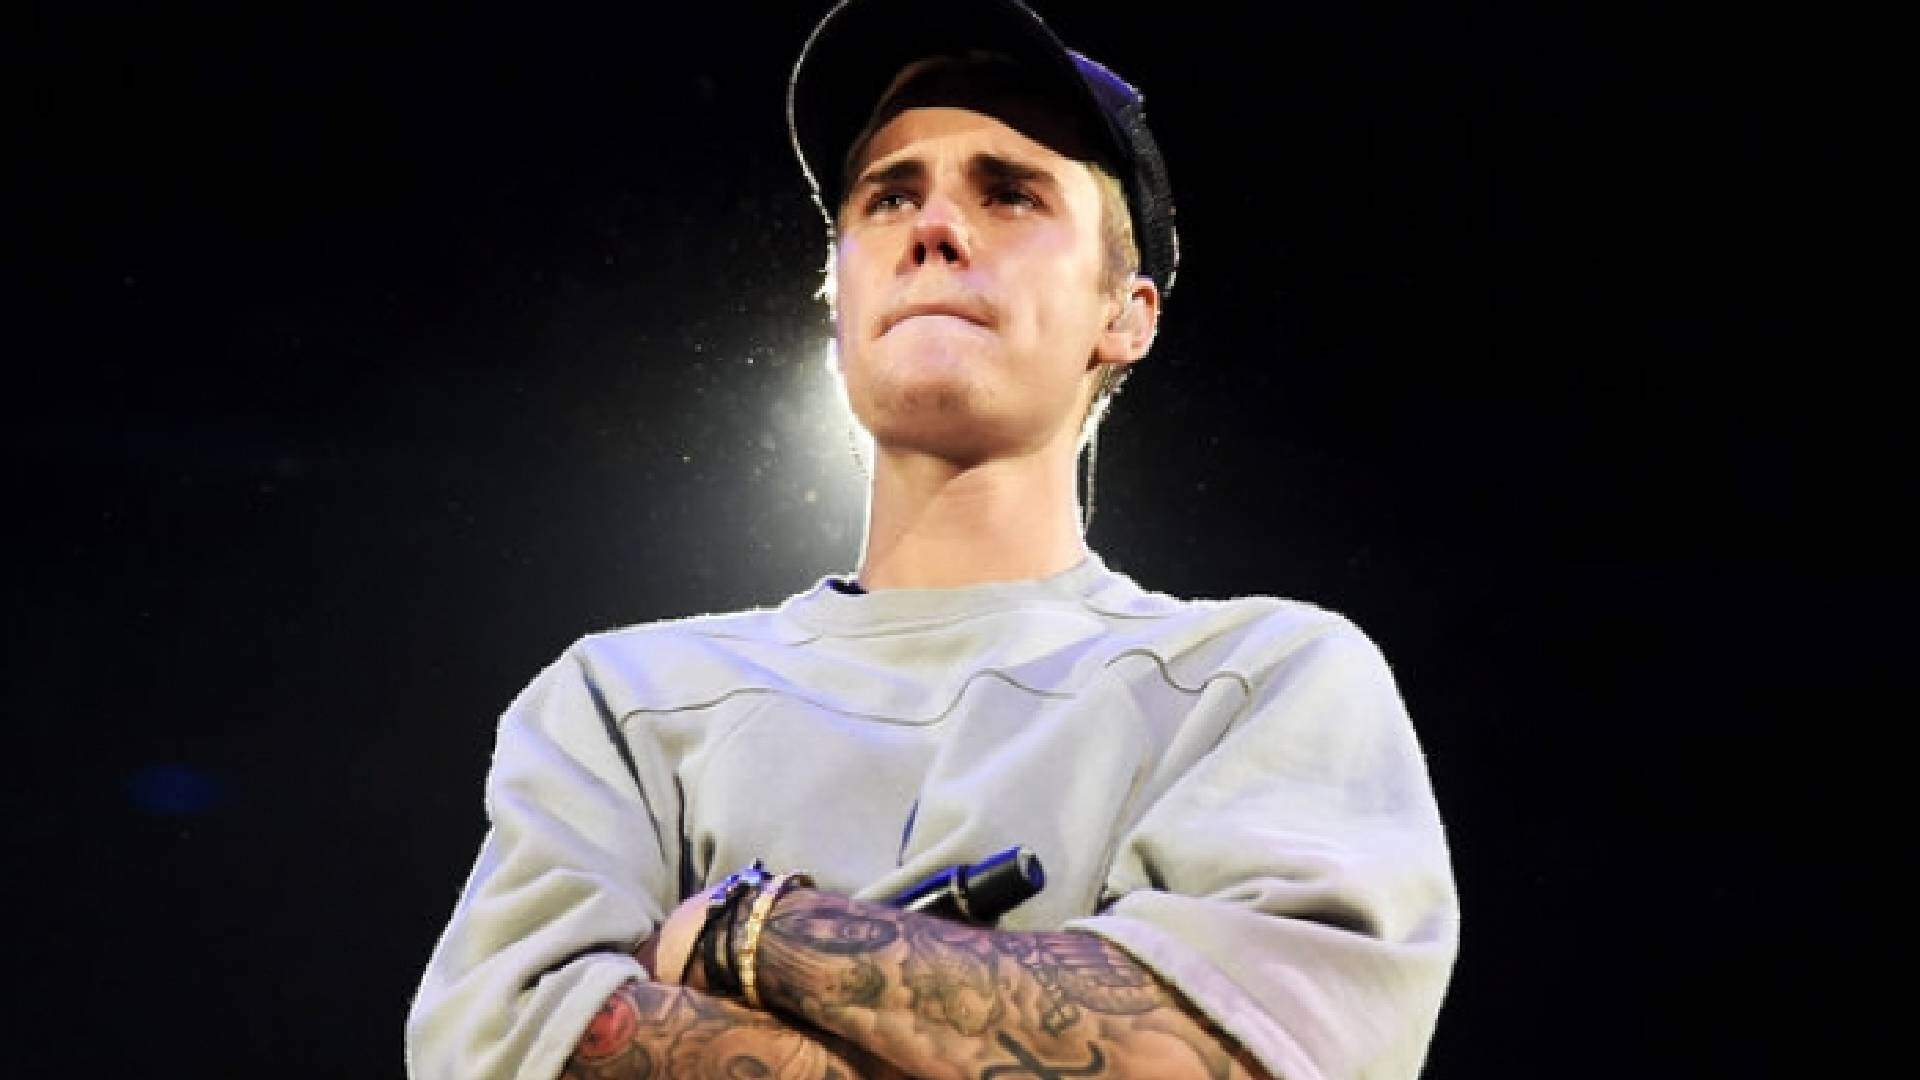 Justin Bieber deixa fãs preocupados com anúncio inesperado: “Não acredito que estou dizendo isso”